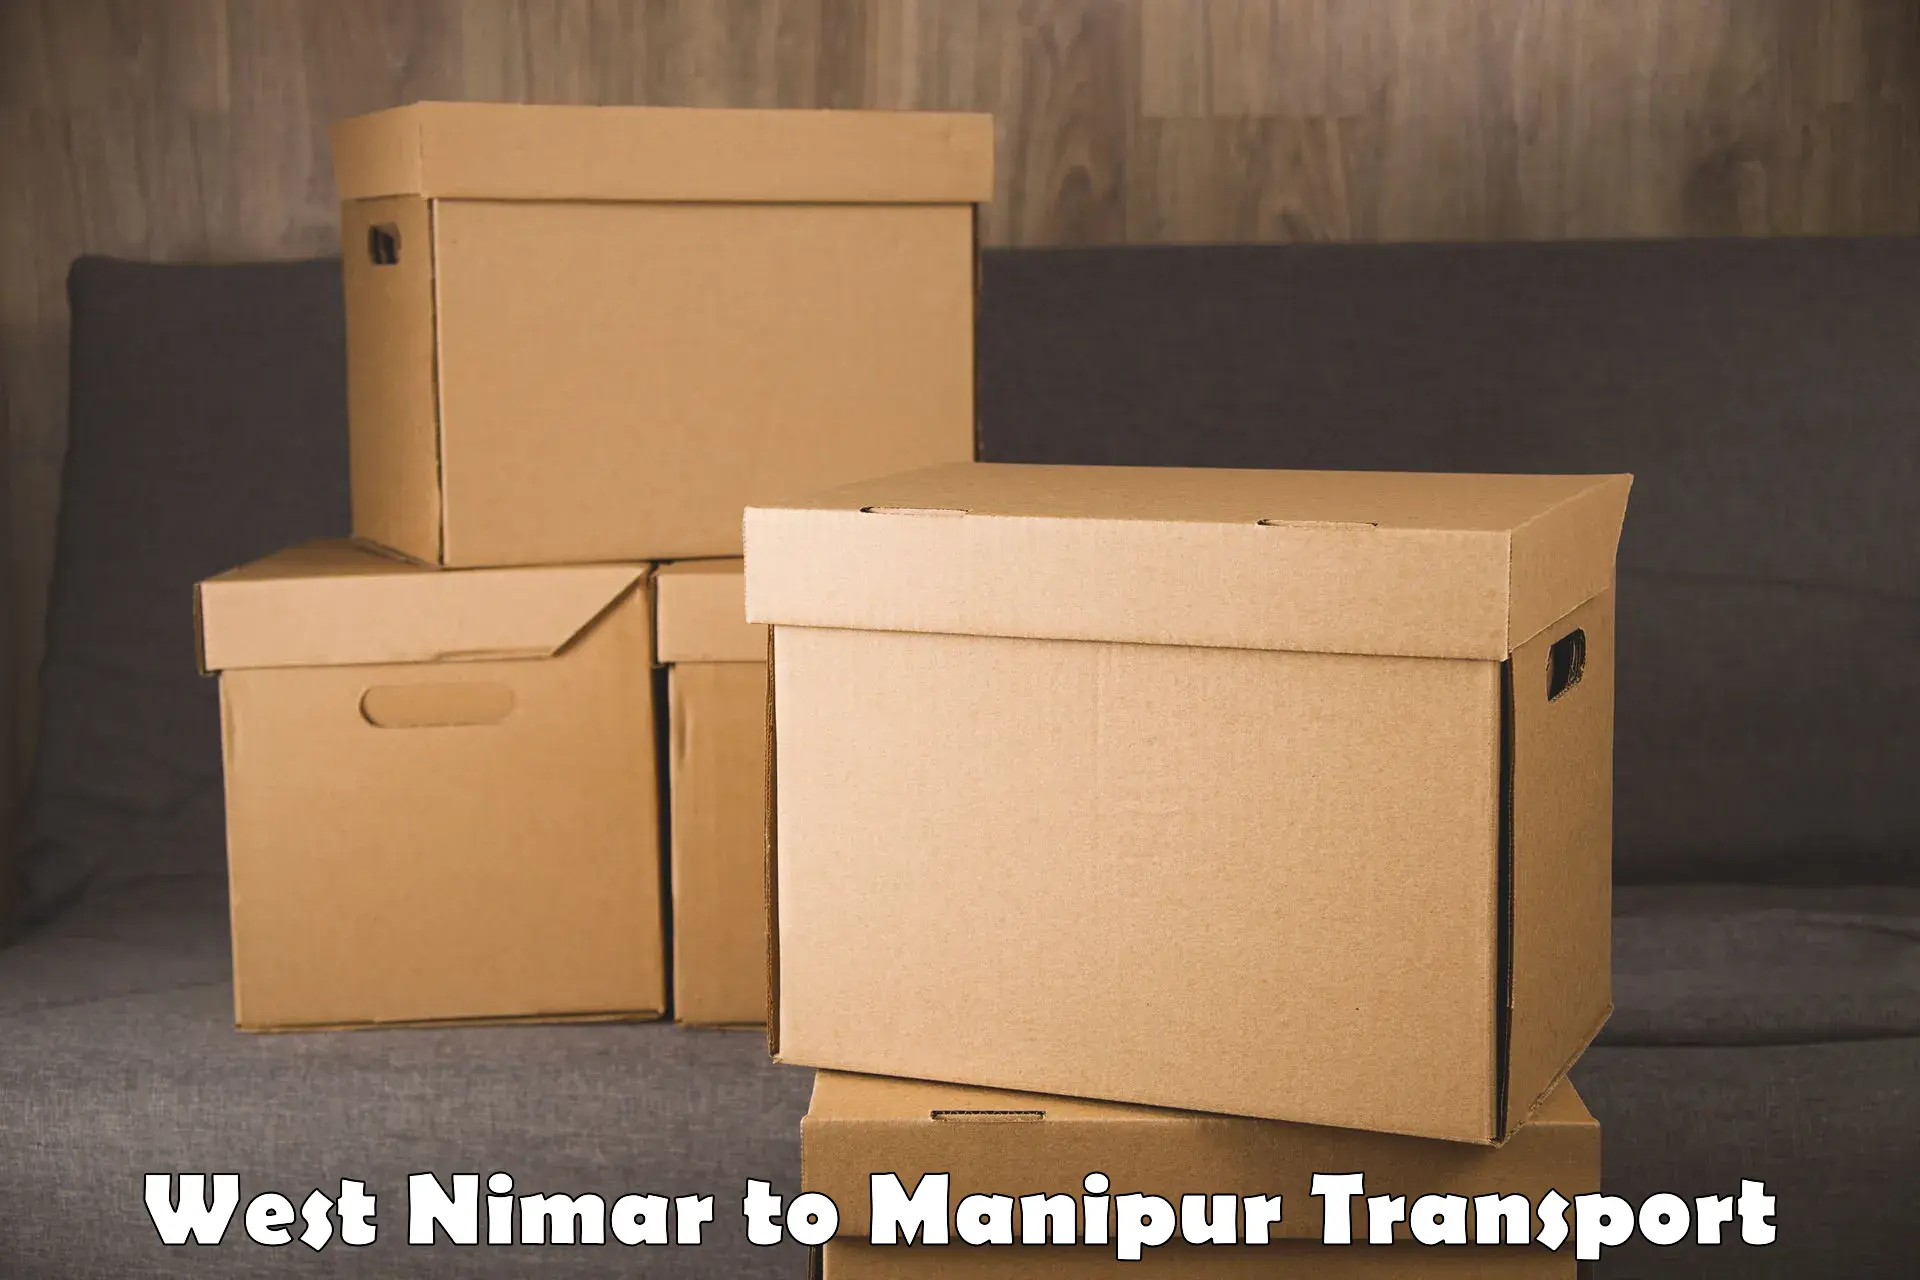 Lorry transport service West Nimar to Churachandpur